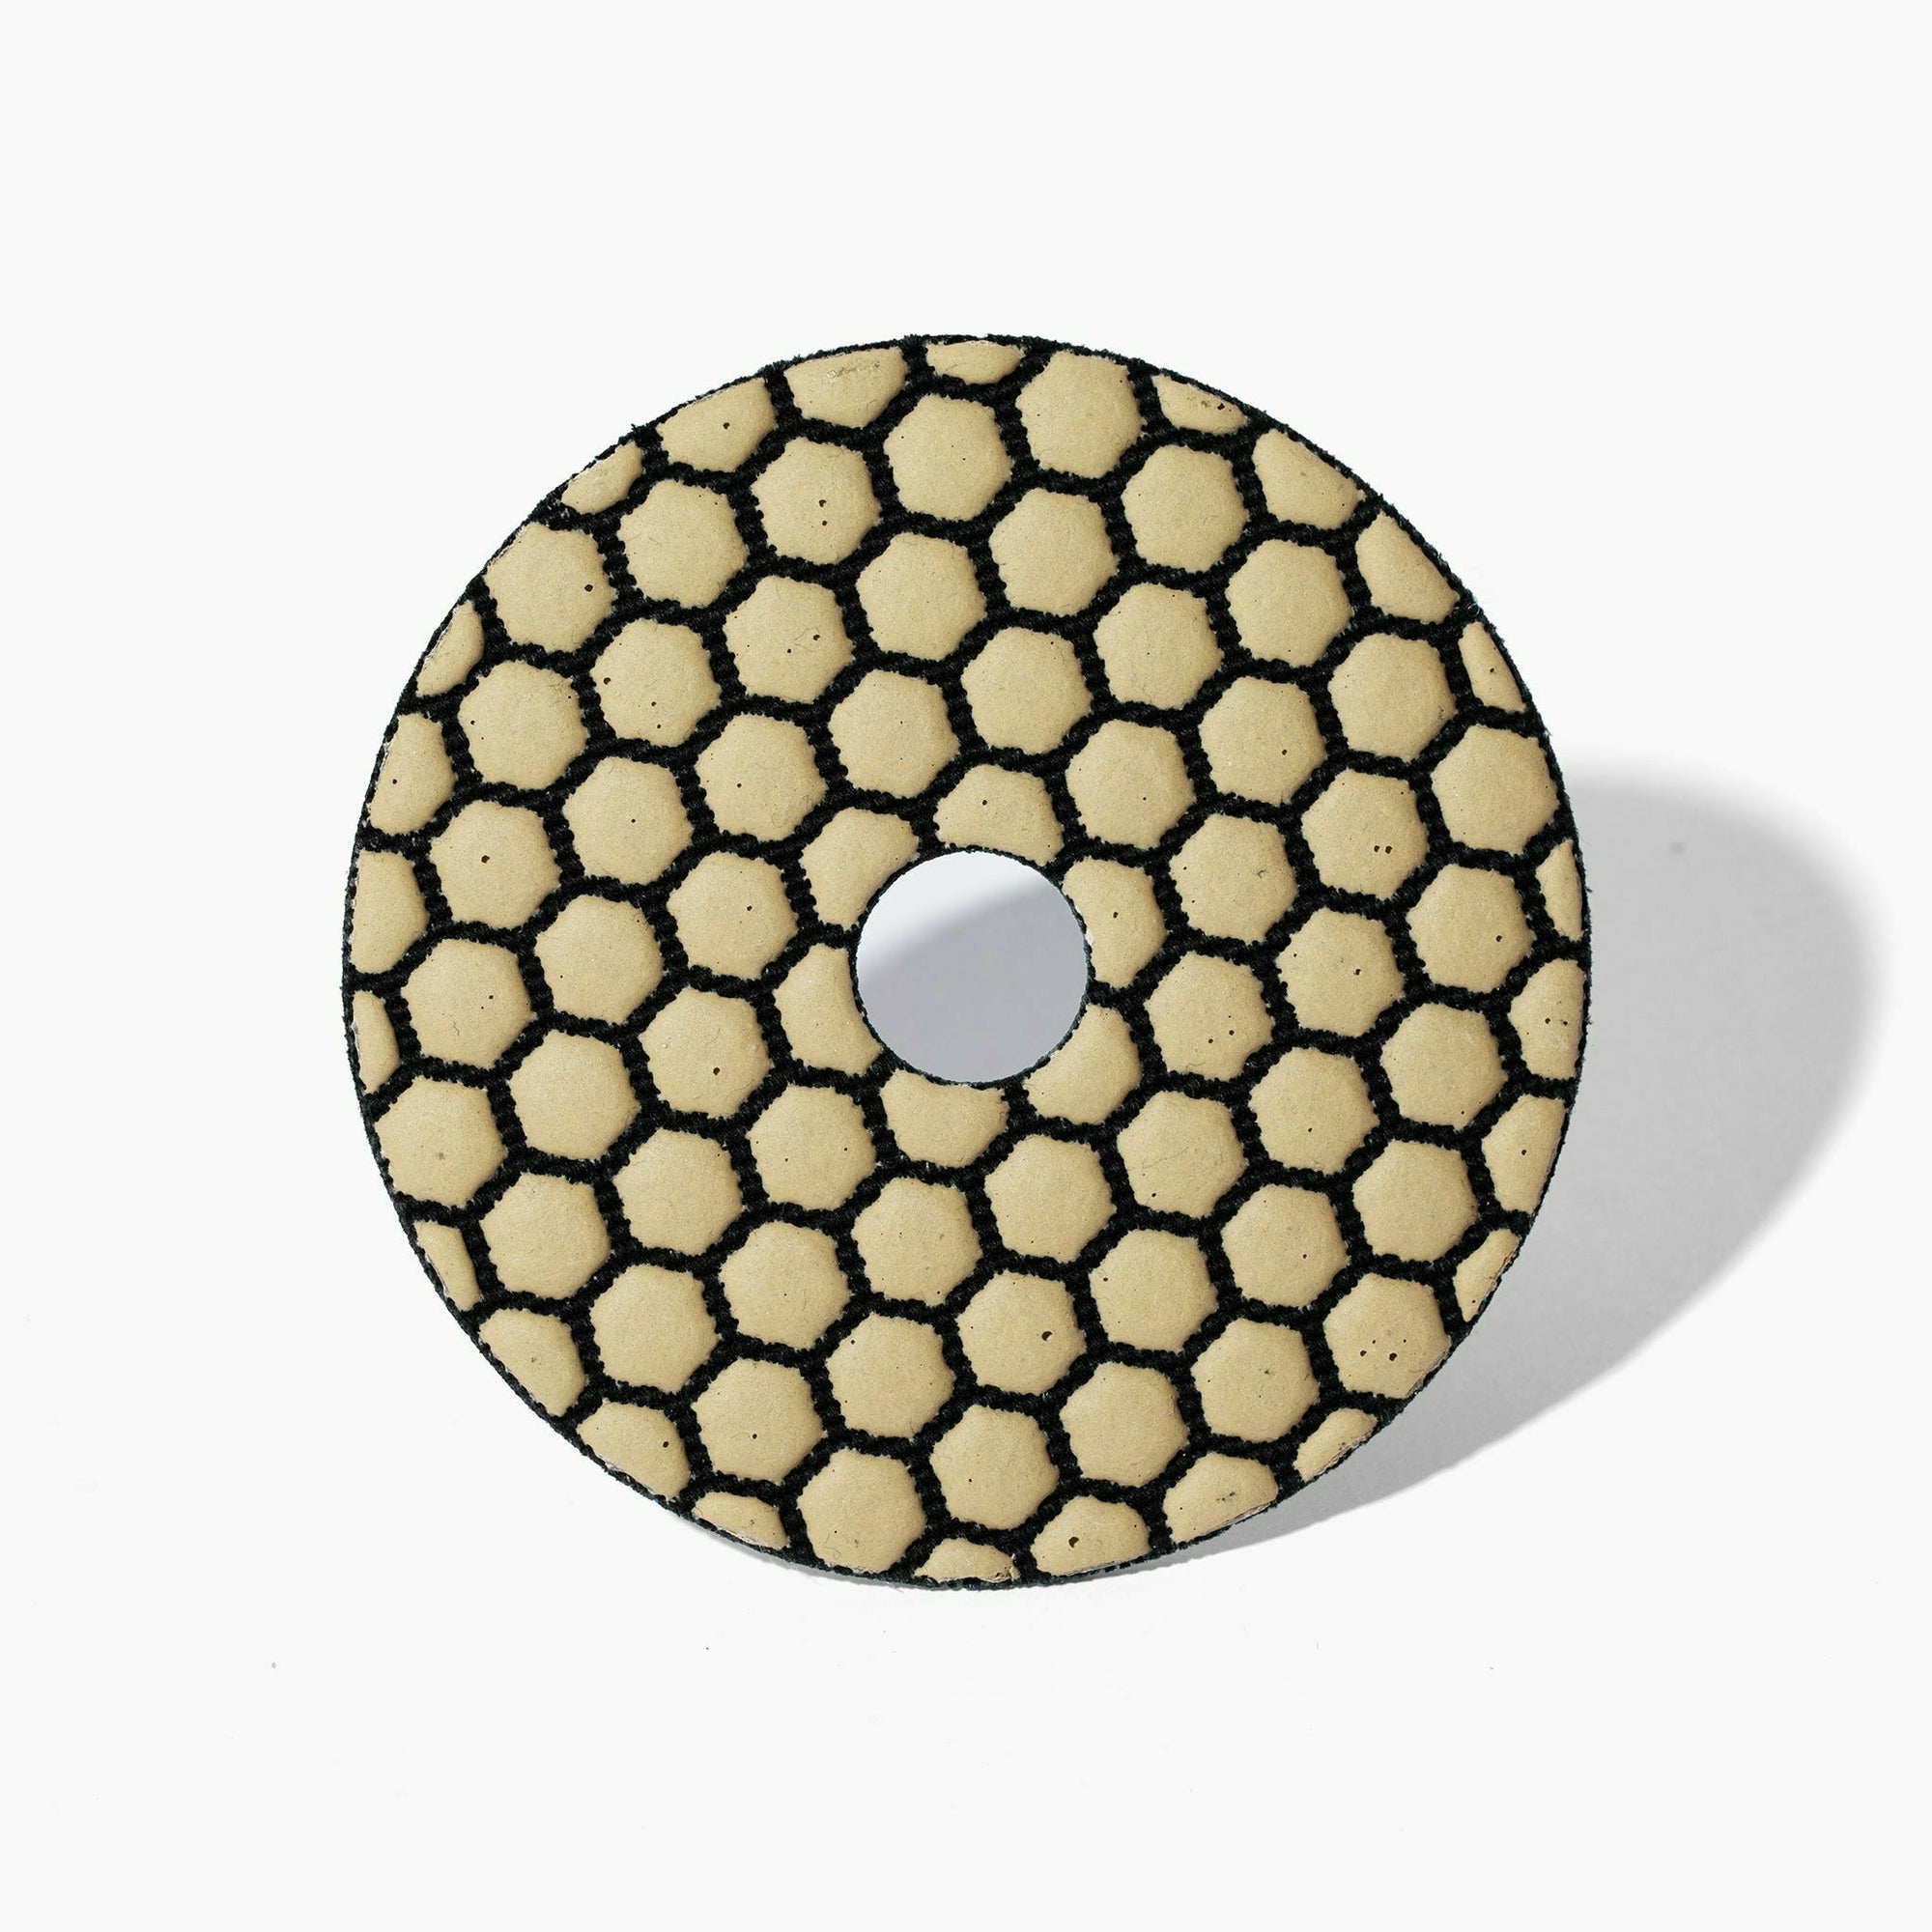 Calidad 4" Honeycomb Dry Finishing Pad: 400 Grit - Calidad Tools